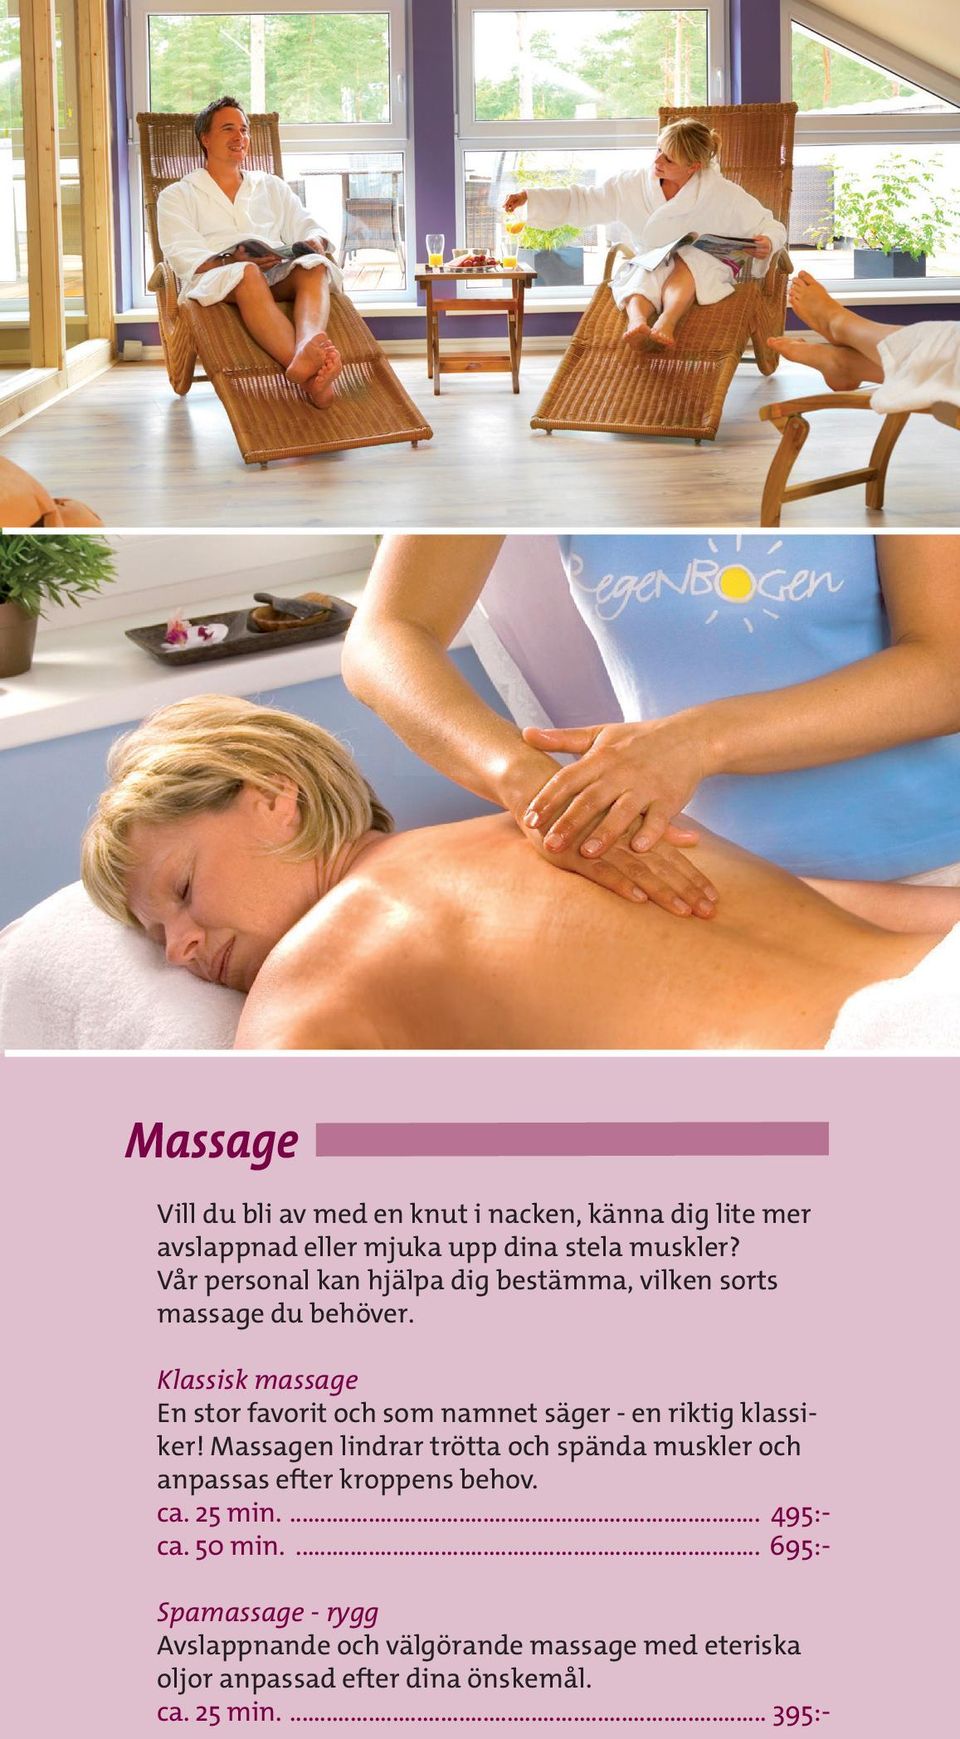 Klassisk massage En stor favorit och som namnet säger - en riktig klassiker!